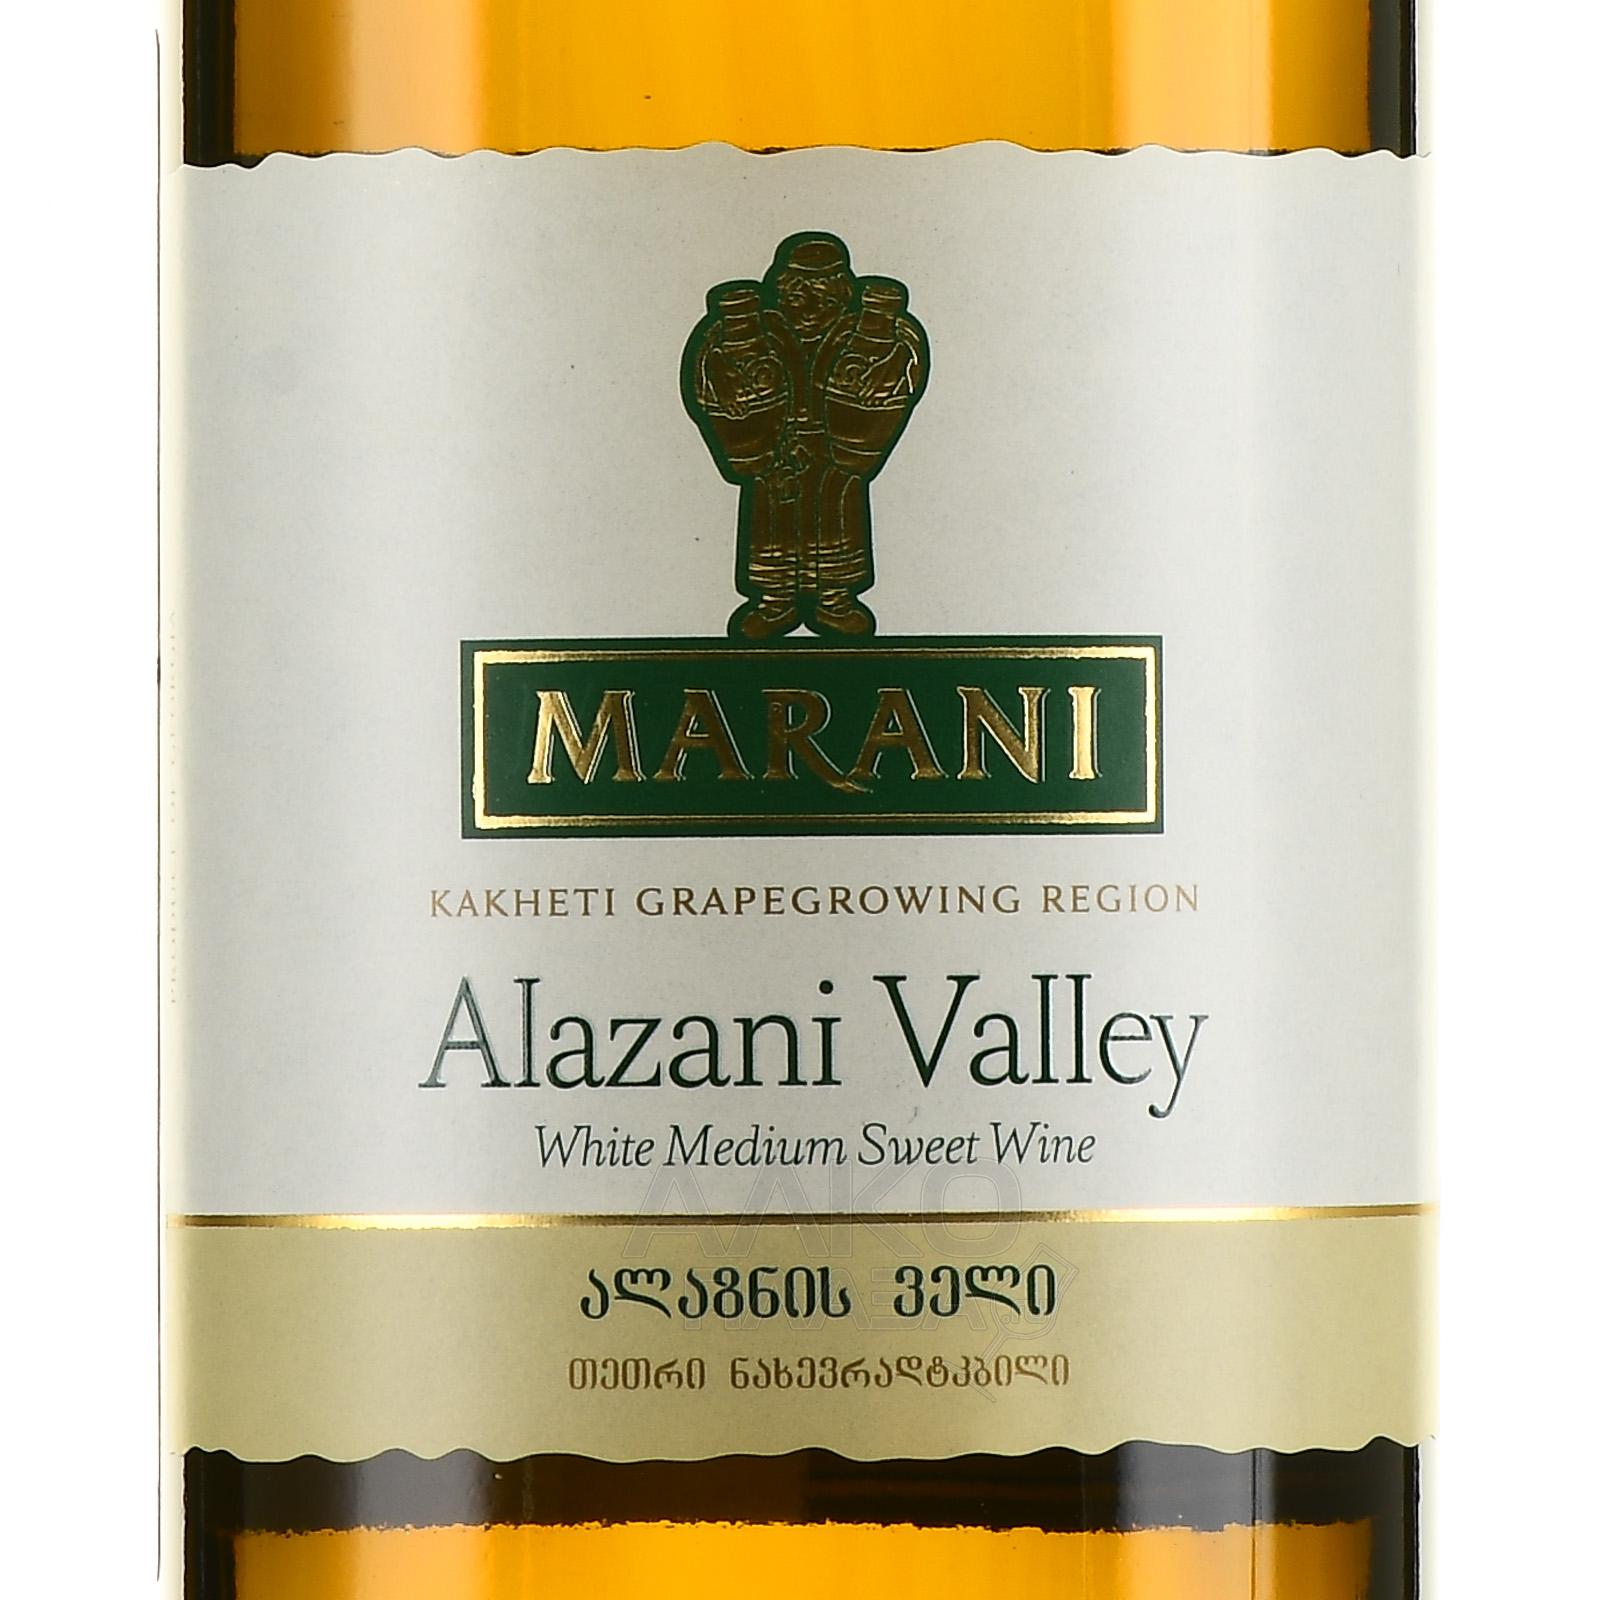 Этикетка Вино столовое полусладкое белое Алазанская долина торговой марки Марани креп 12%, емк 0,75 л